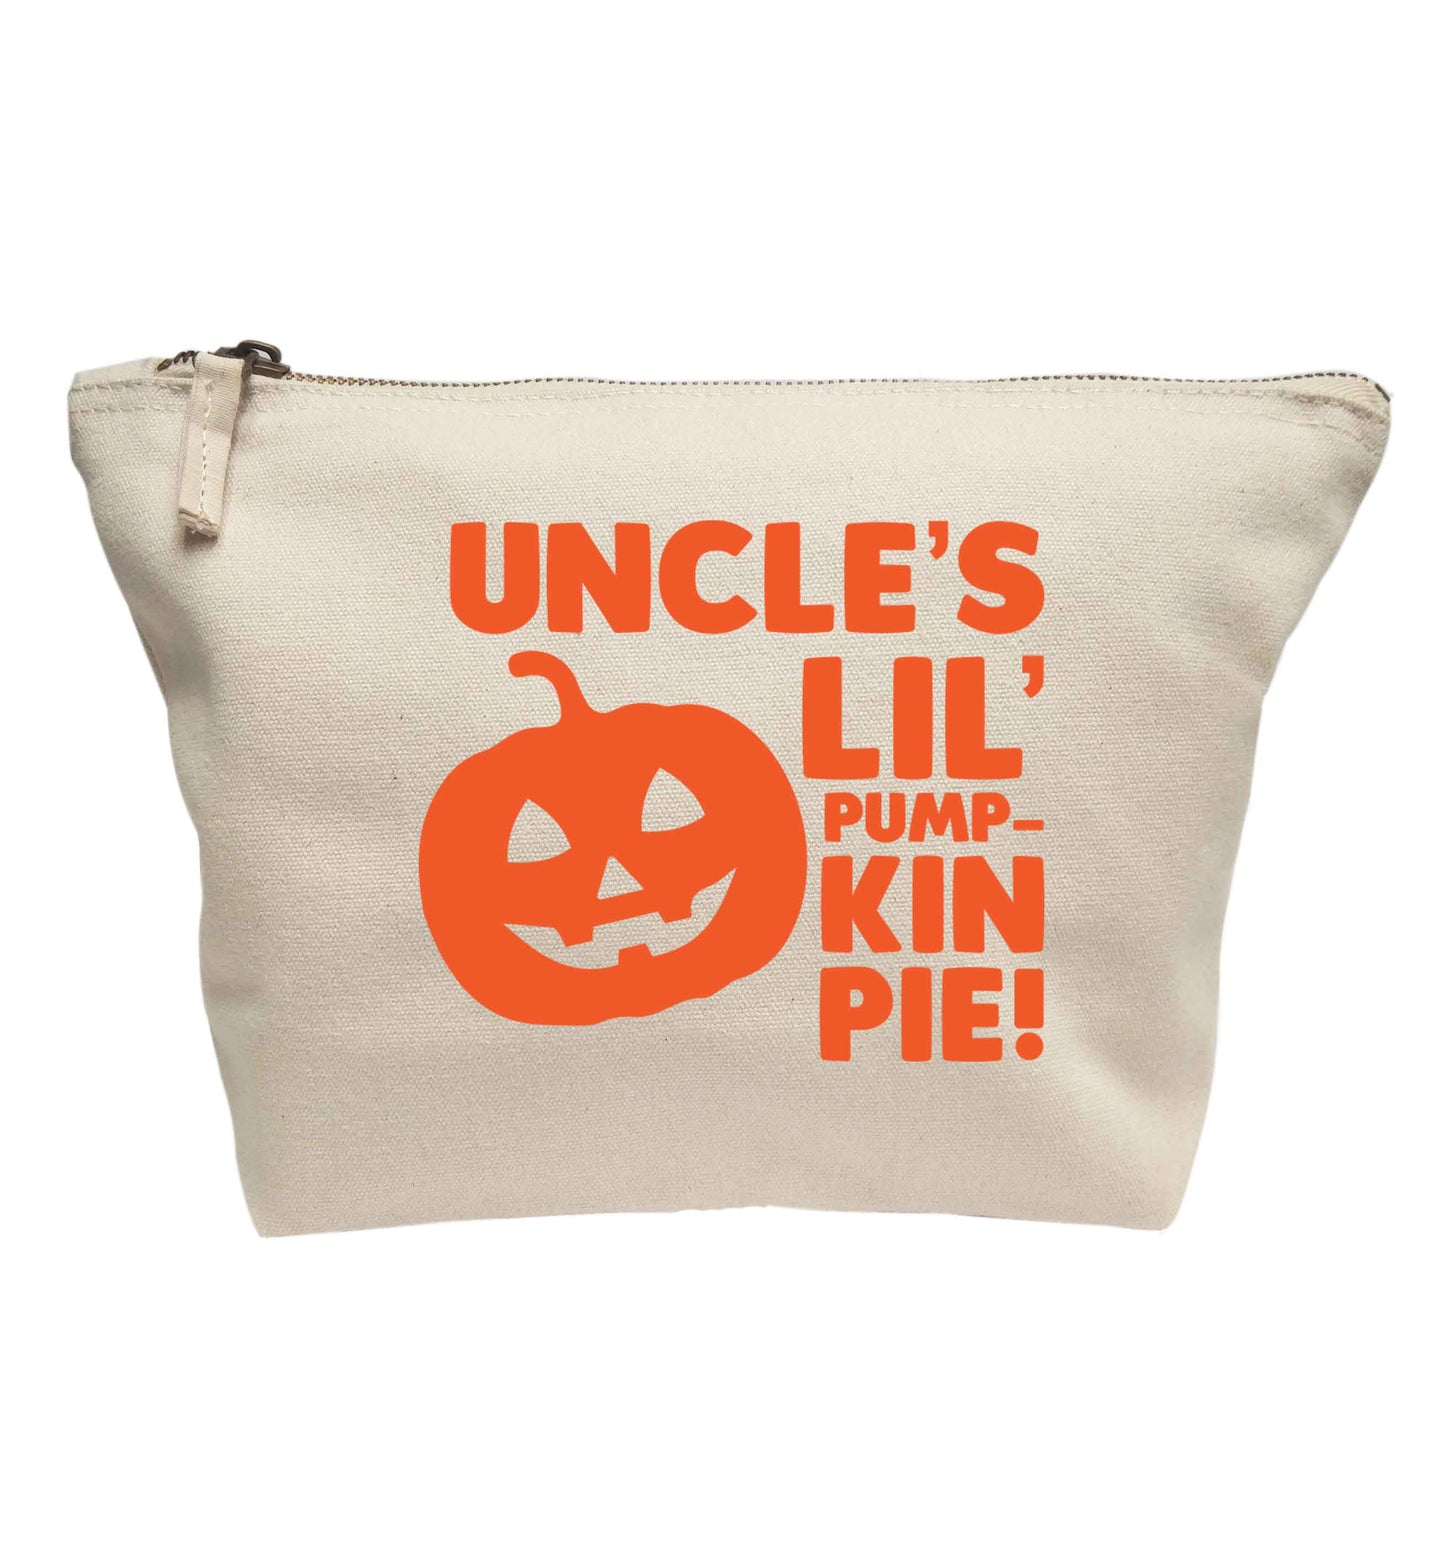 Uncle's lil' pumpkin pie | Makeup / wash bag